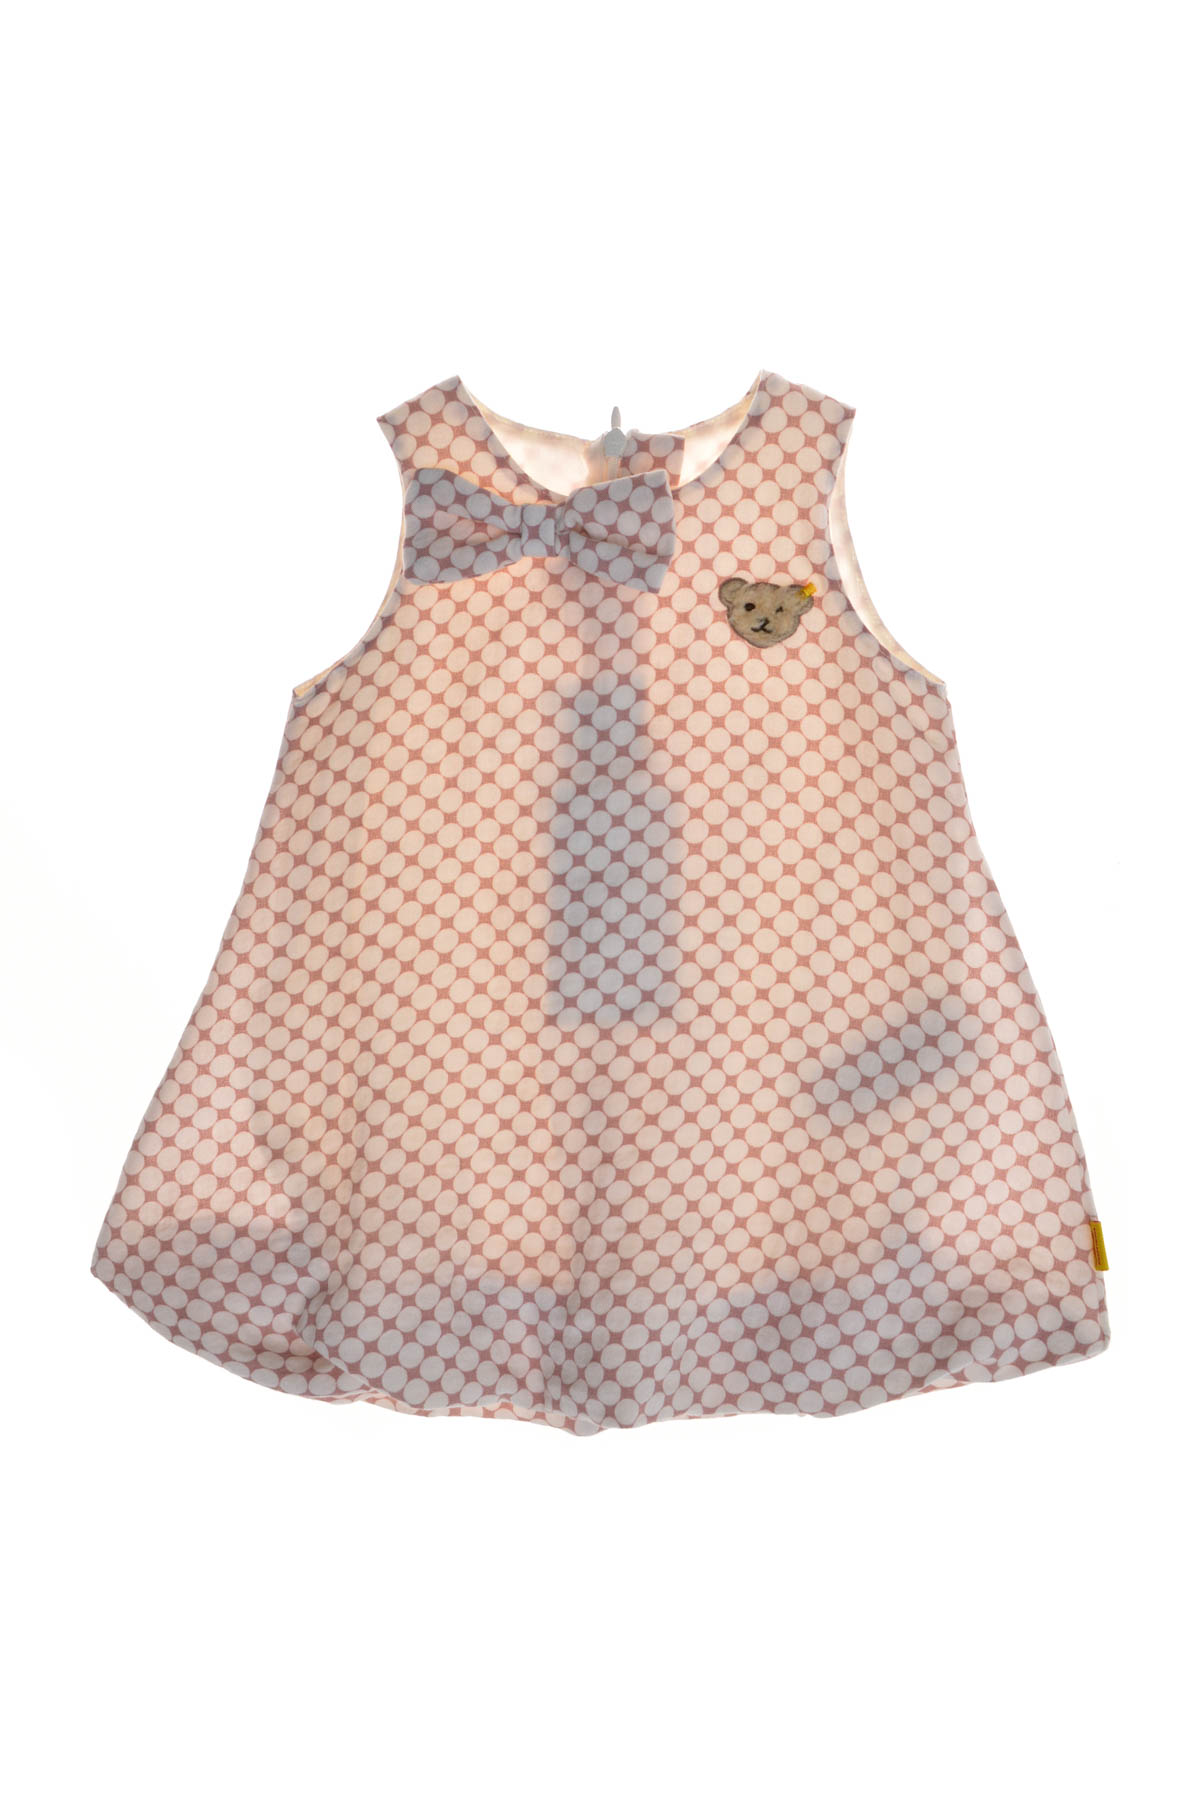 Baby's dress - Steiff - 0